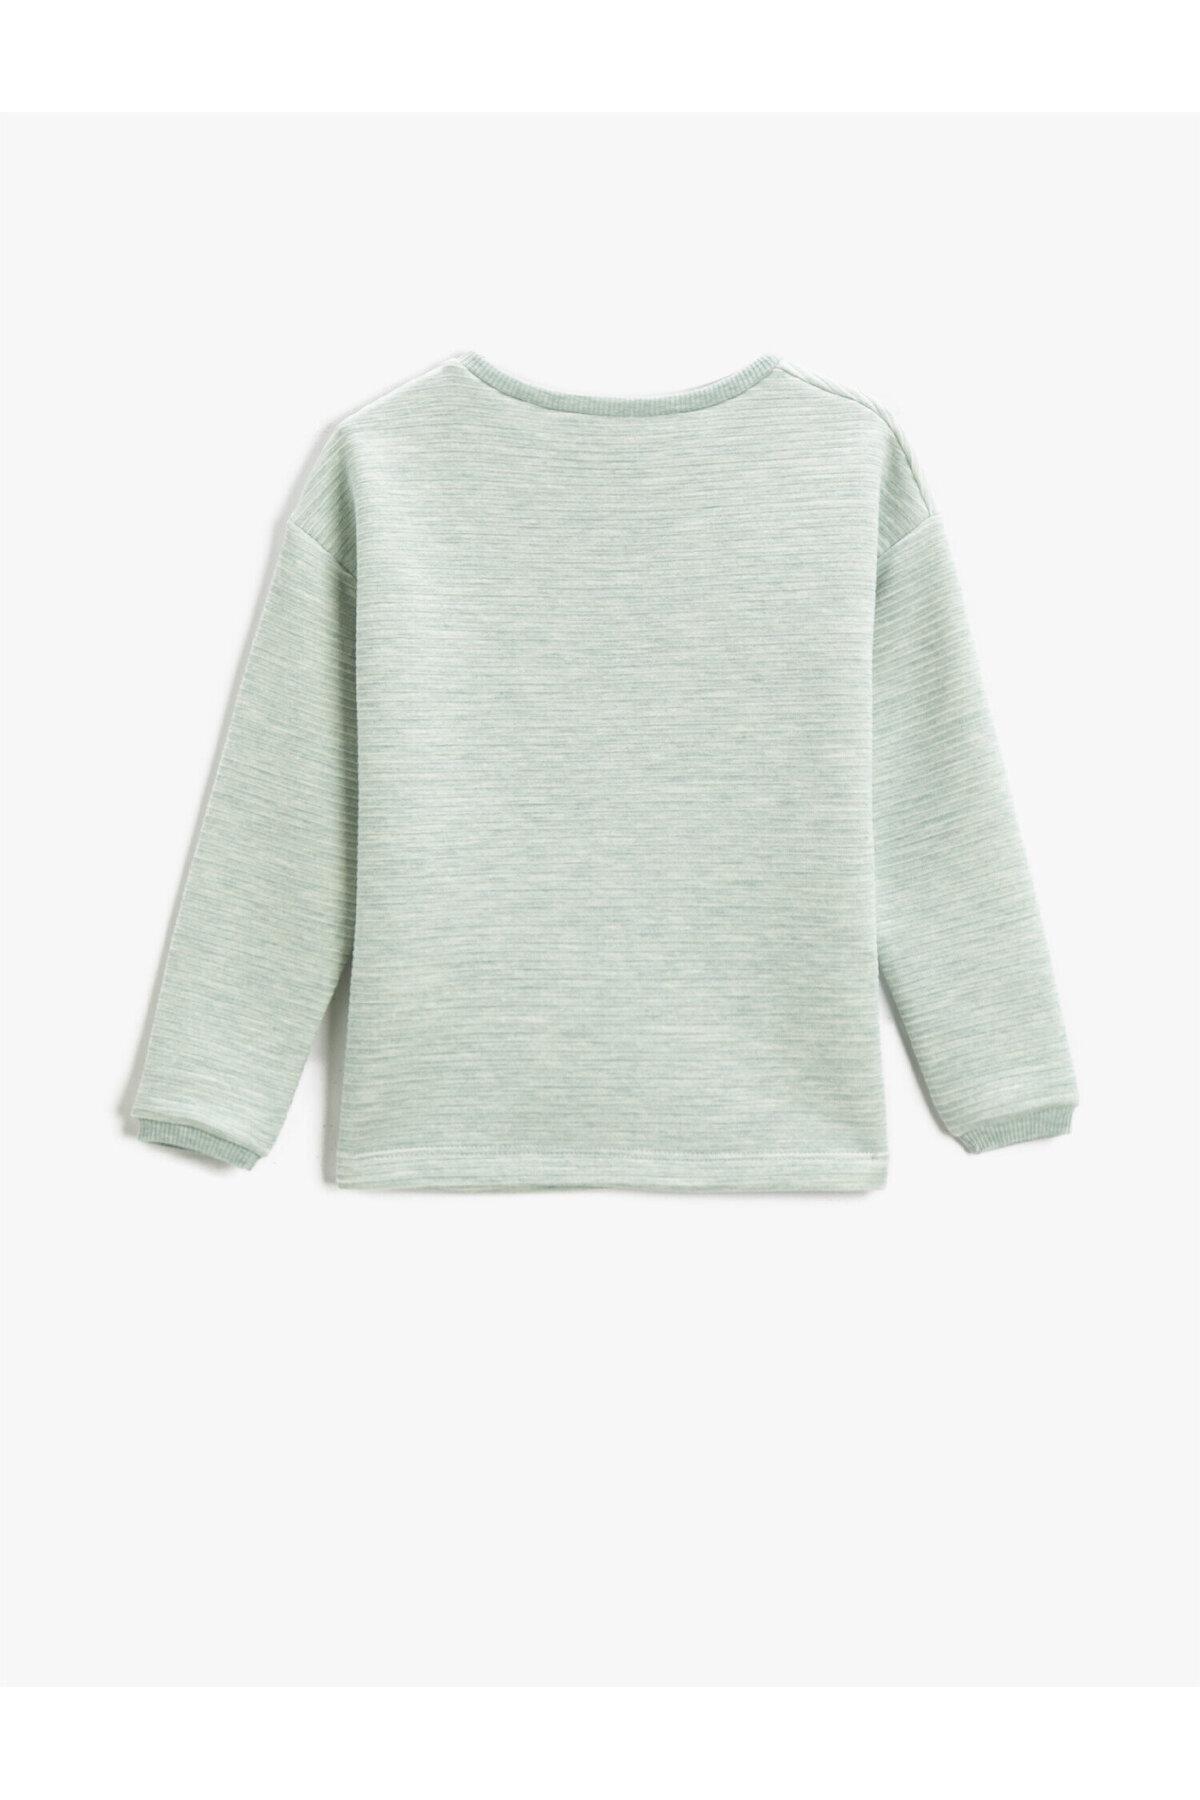 Koton - Green Crew Neck Printed Sweatshirt, Kids Girls